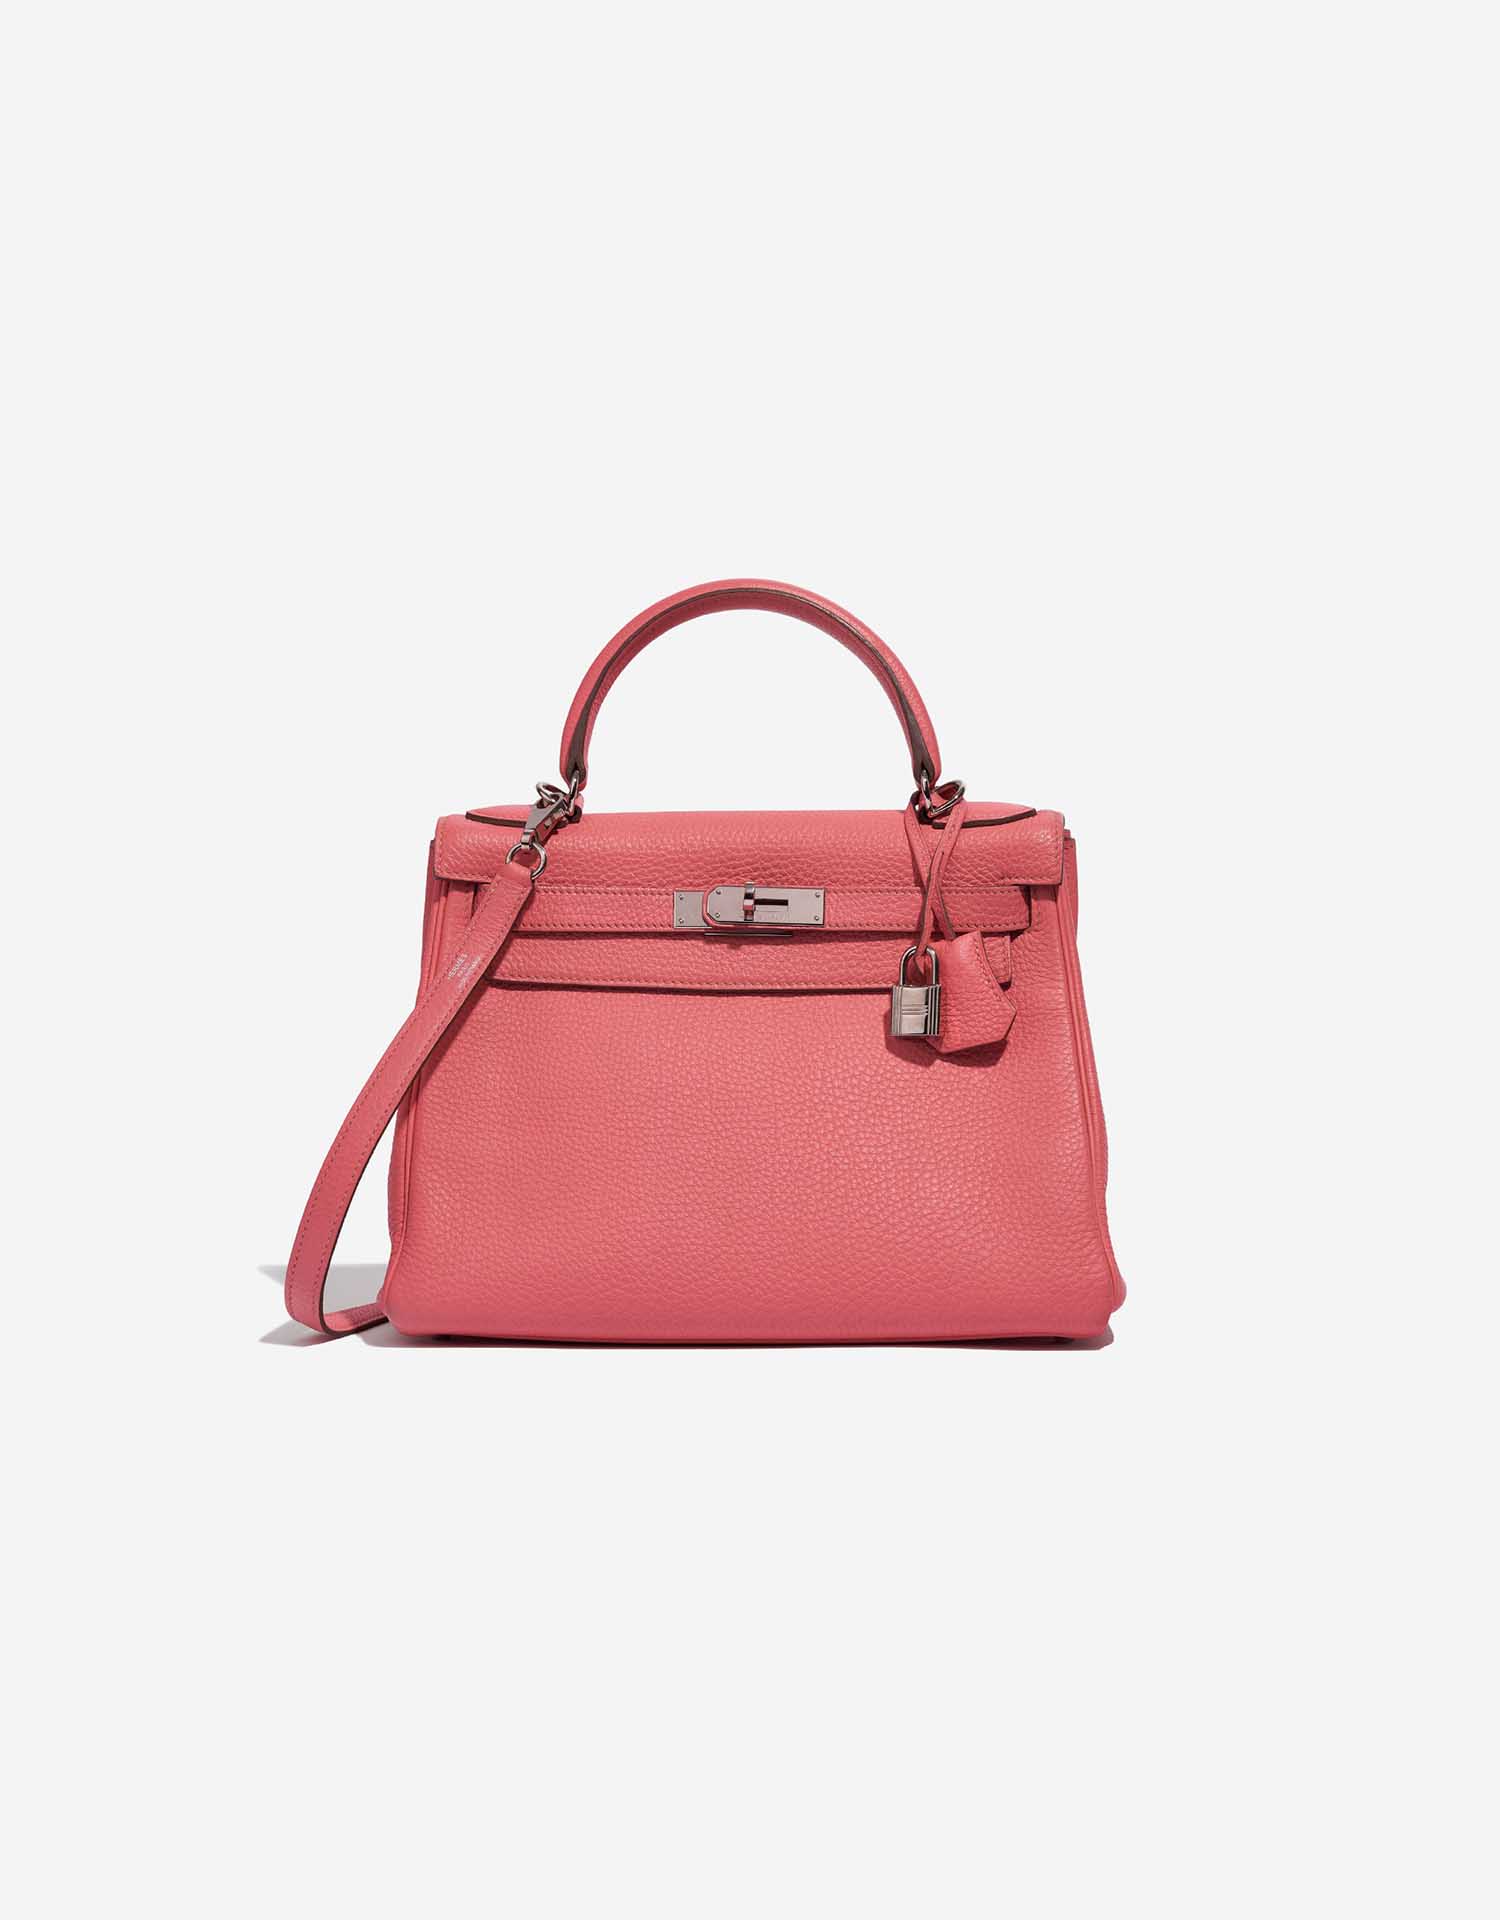 Handbags Hermès New Hermes Kelly Handbag 28 Return Leather Red Togo Leather Purse Shoulder Strap